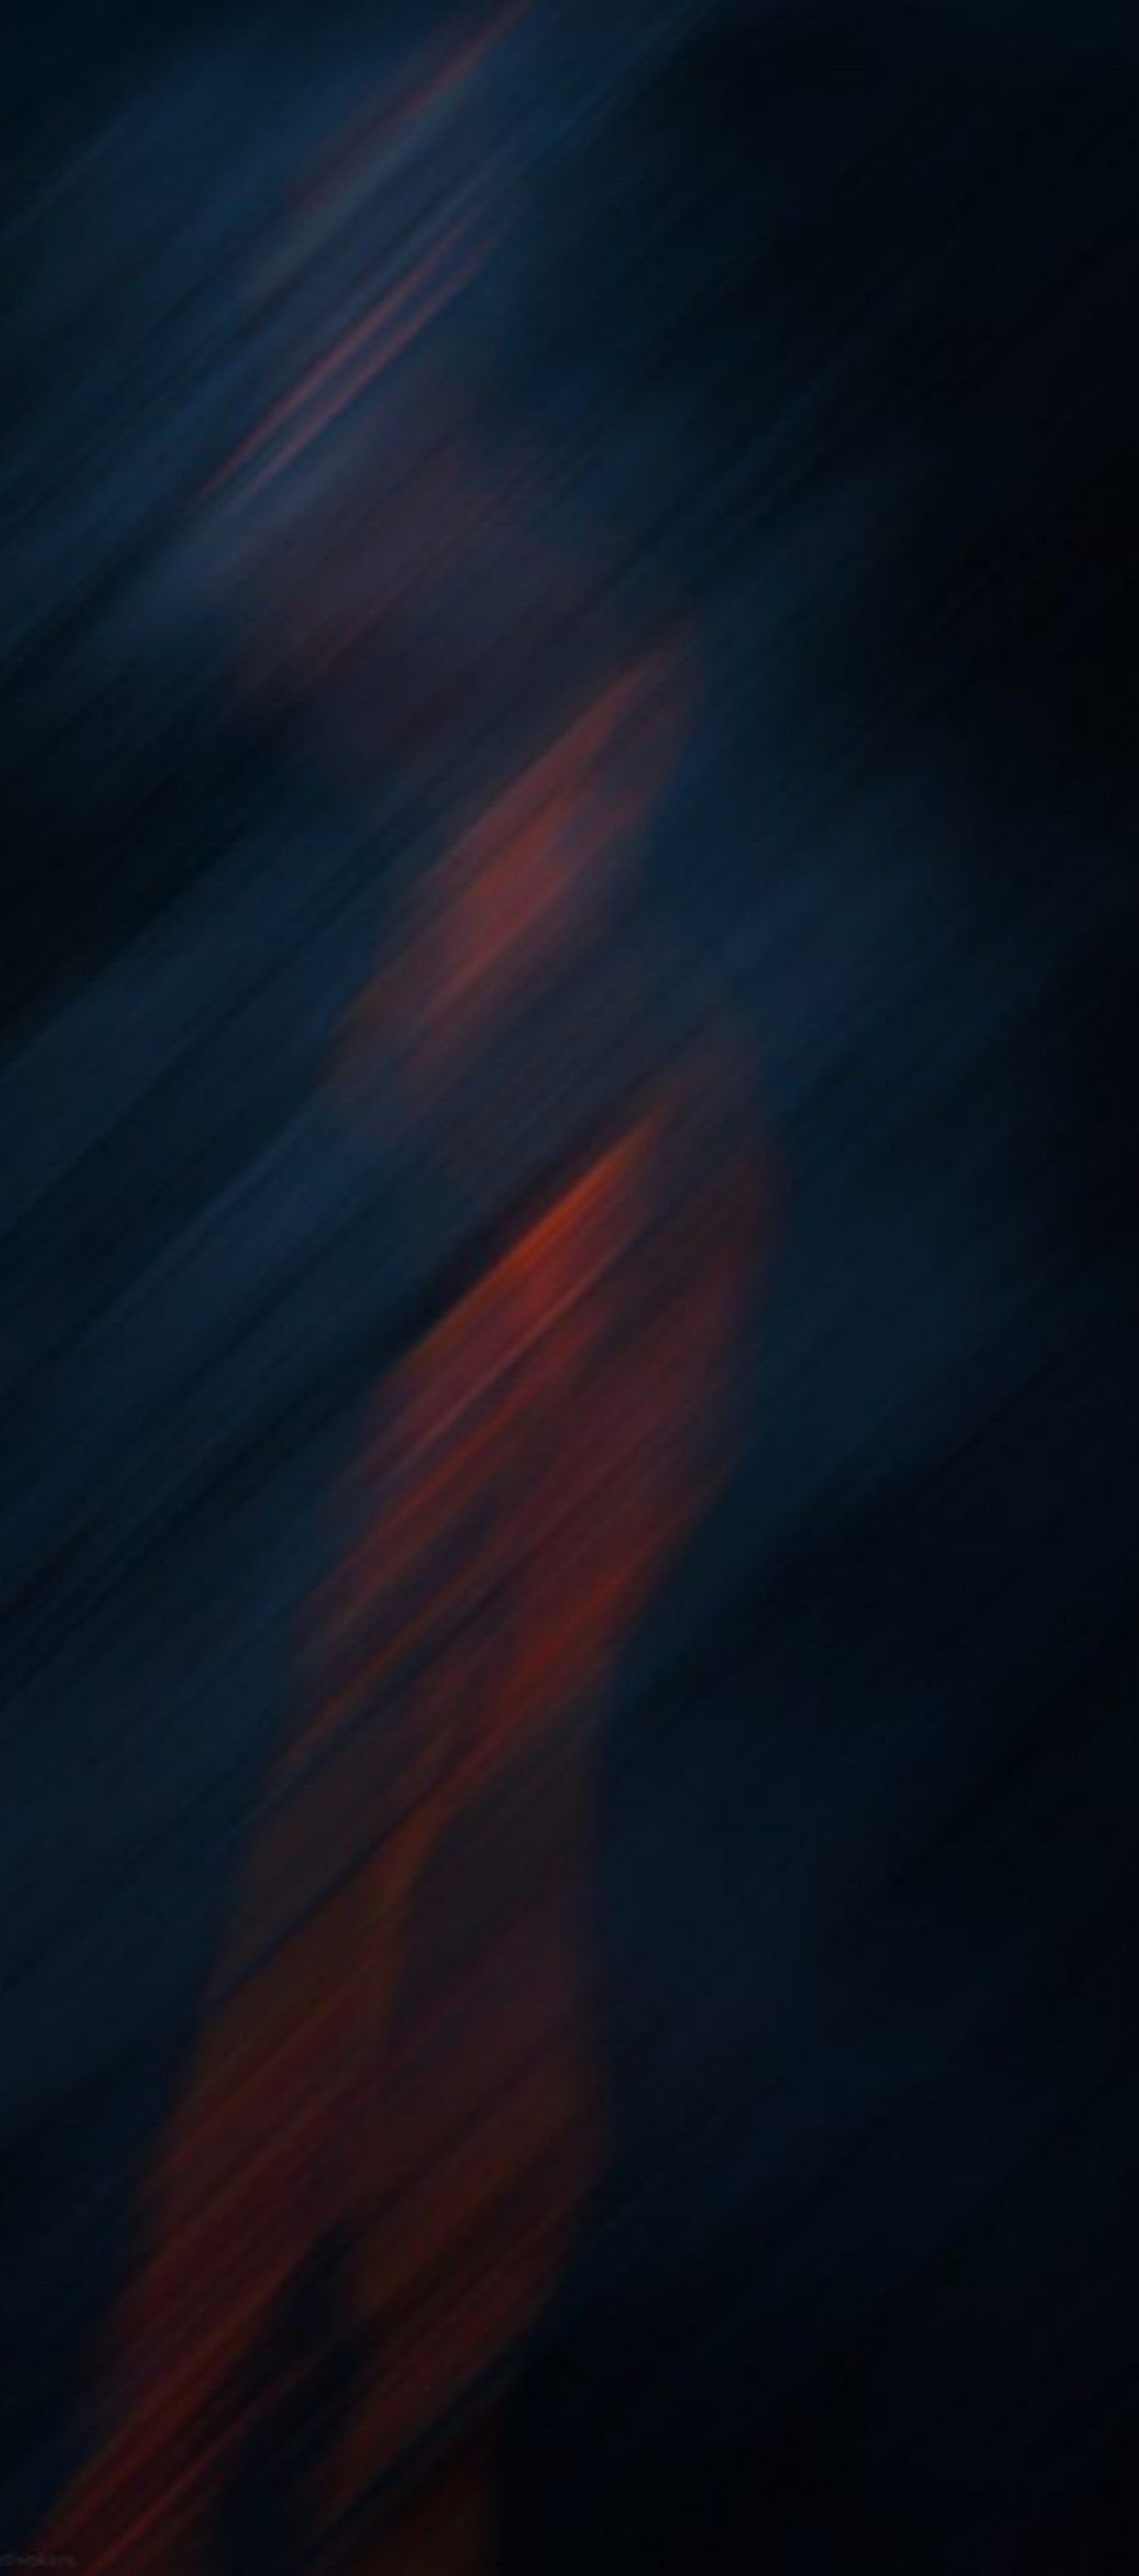 Minimal Abstract HD Phone Wallpaper Free Minimal Abstract